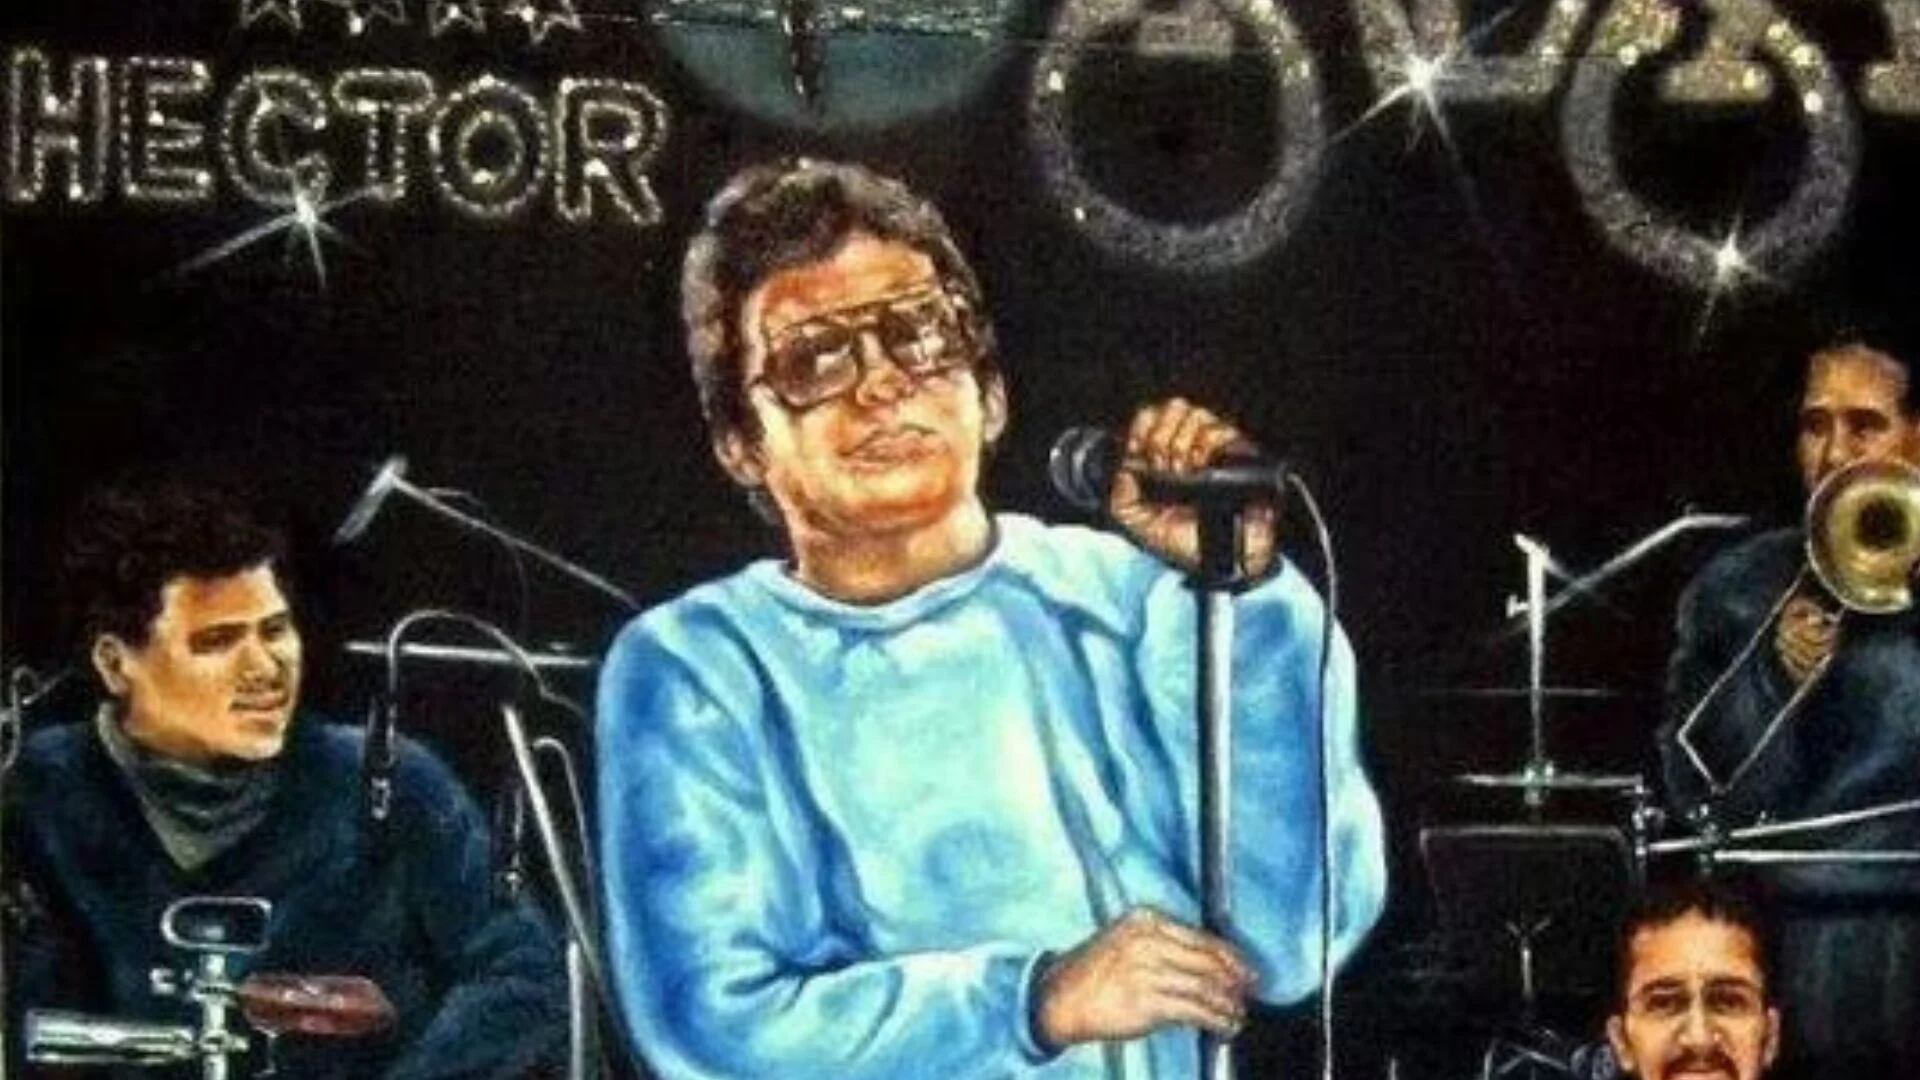 La canción más popular de Héctor Lavoe es "El cantante", escrita por Rubén Blades (Twitter).